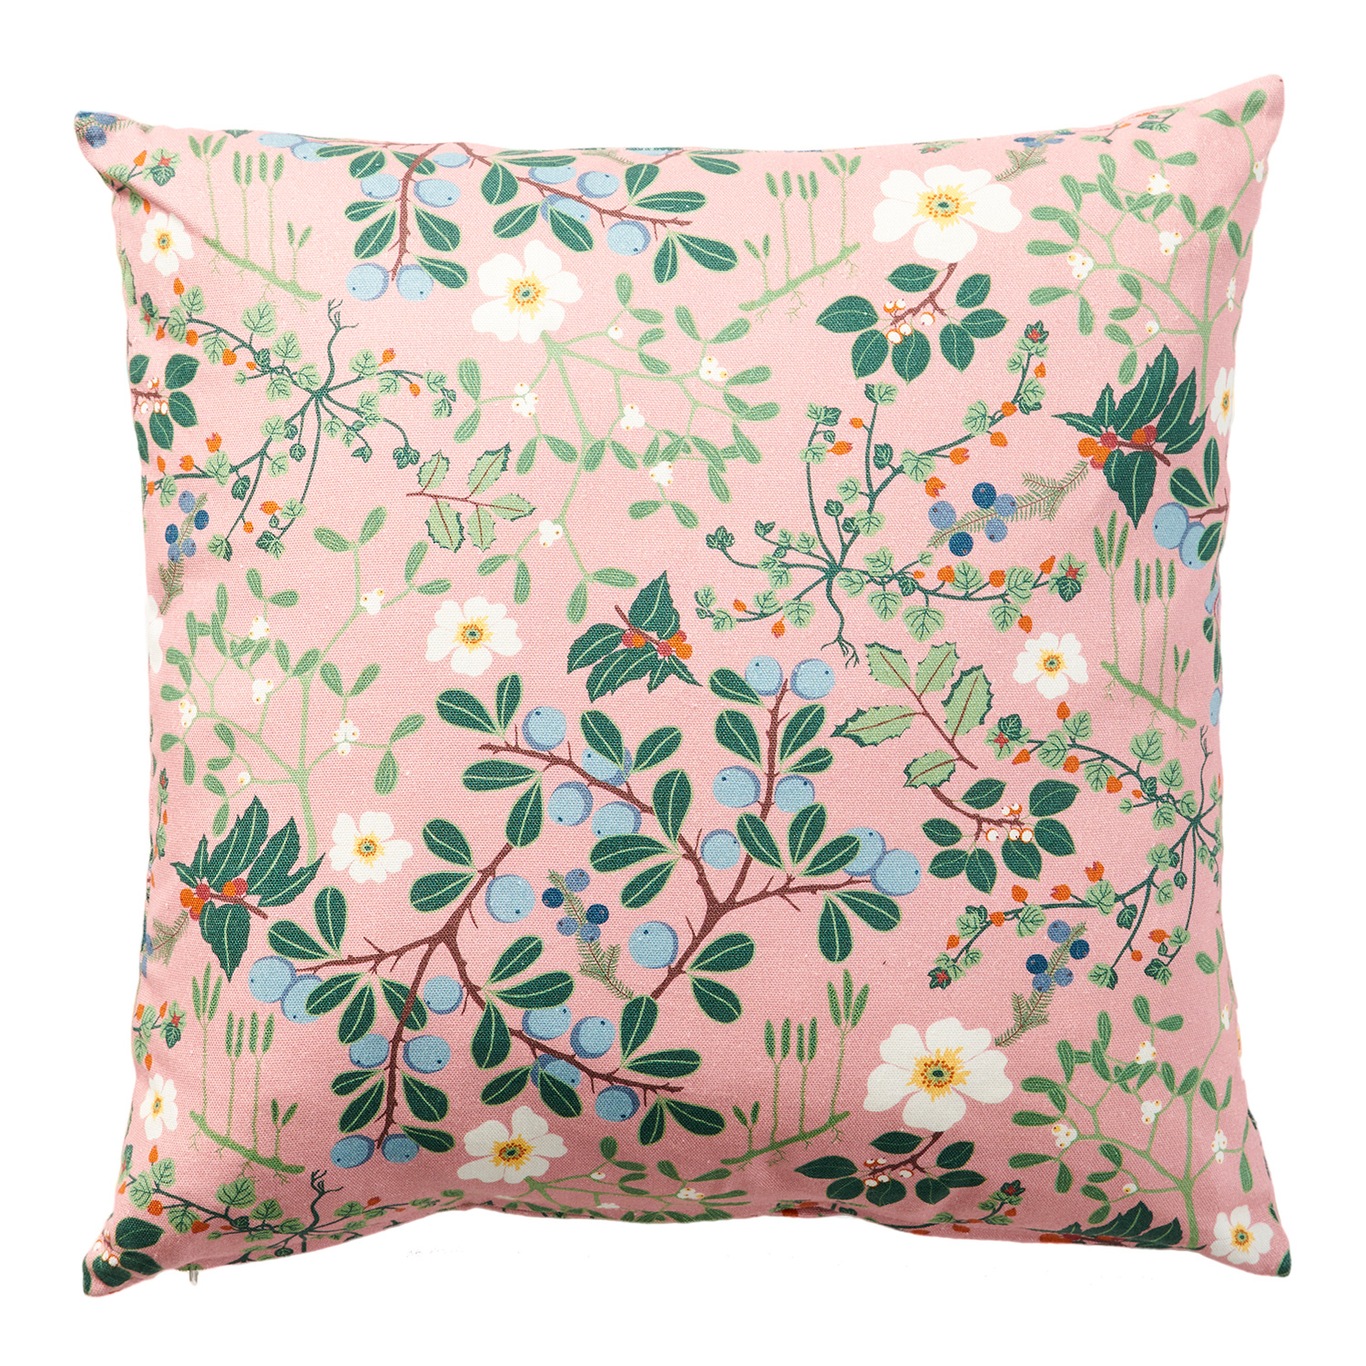 Blackthorn Cushion Cover 45x45cm, Pink